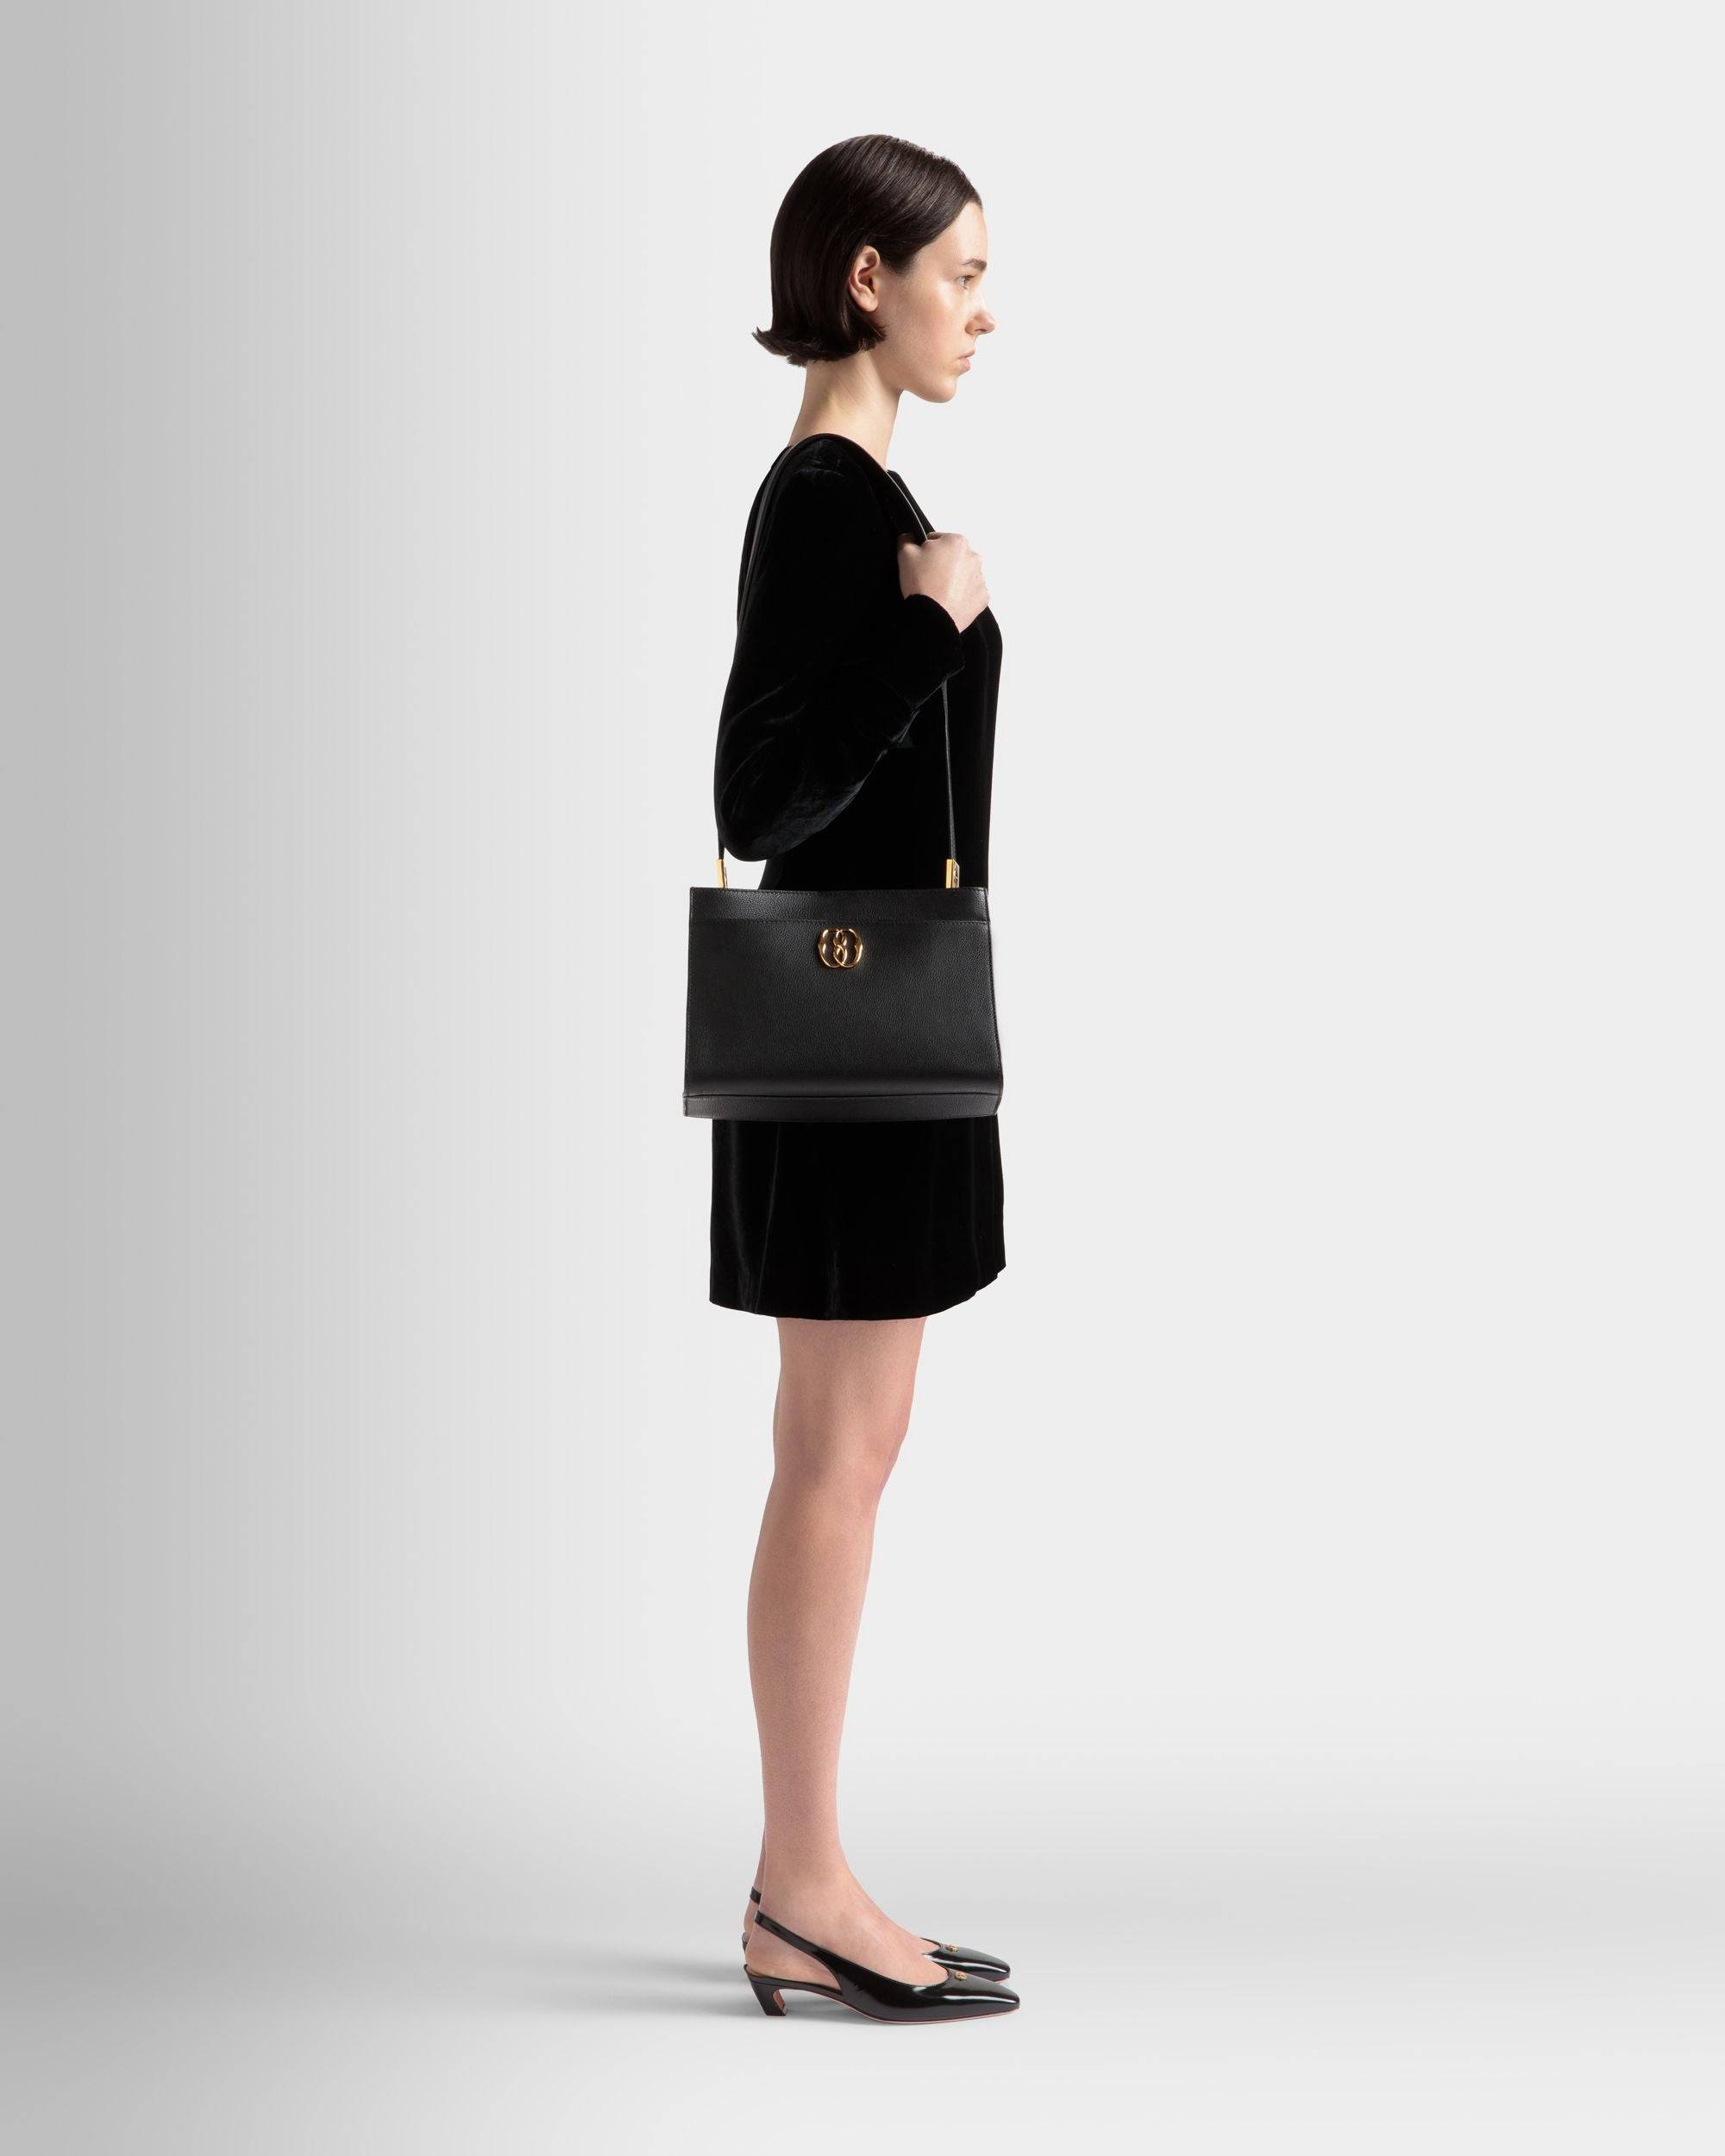 Emblem | Women's Shoulder Bag in Black Grained Leather | Bally | On Model Front